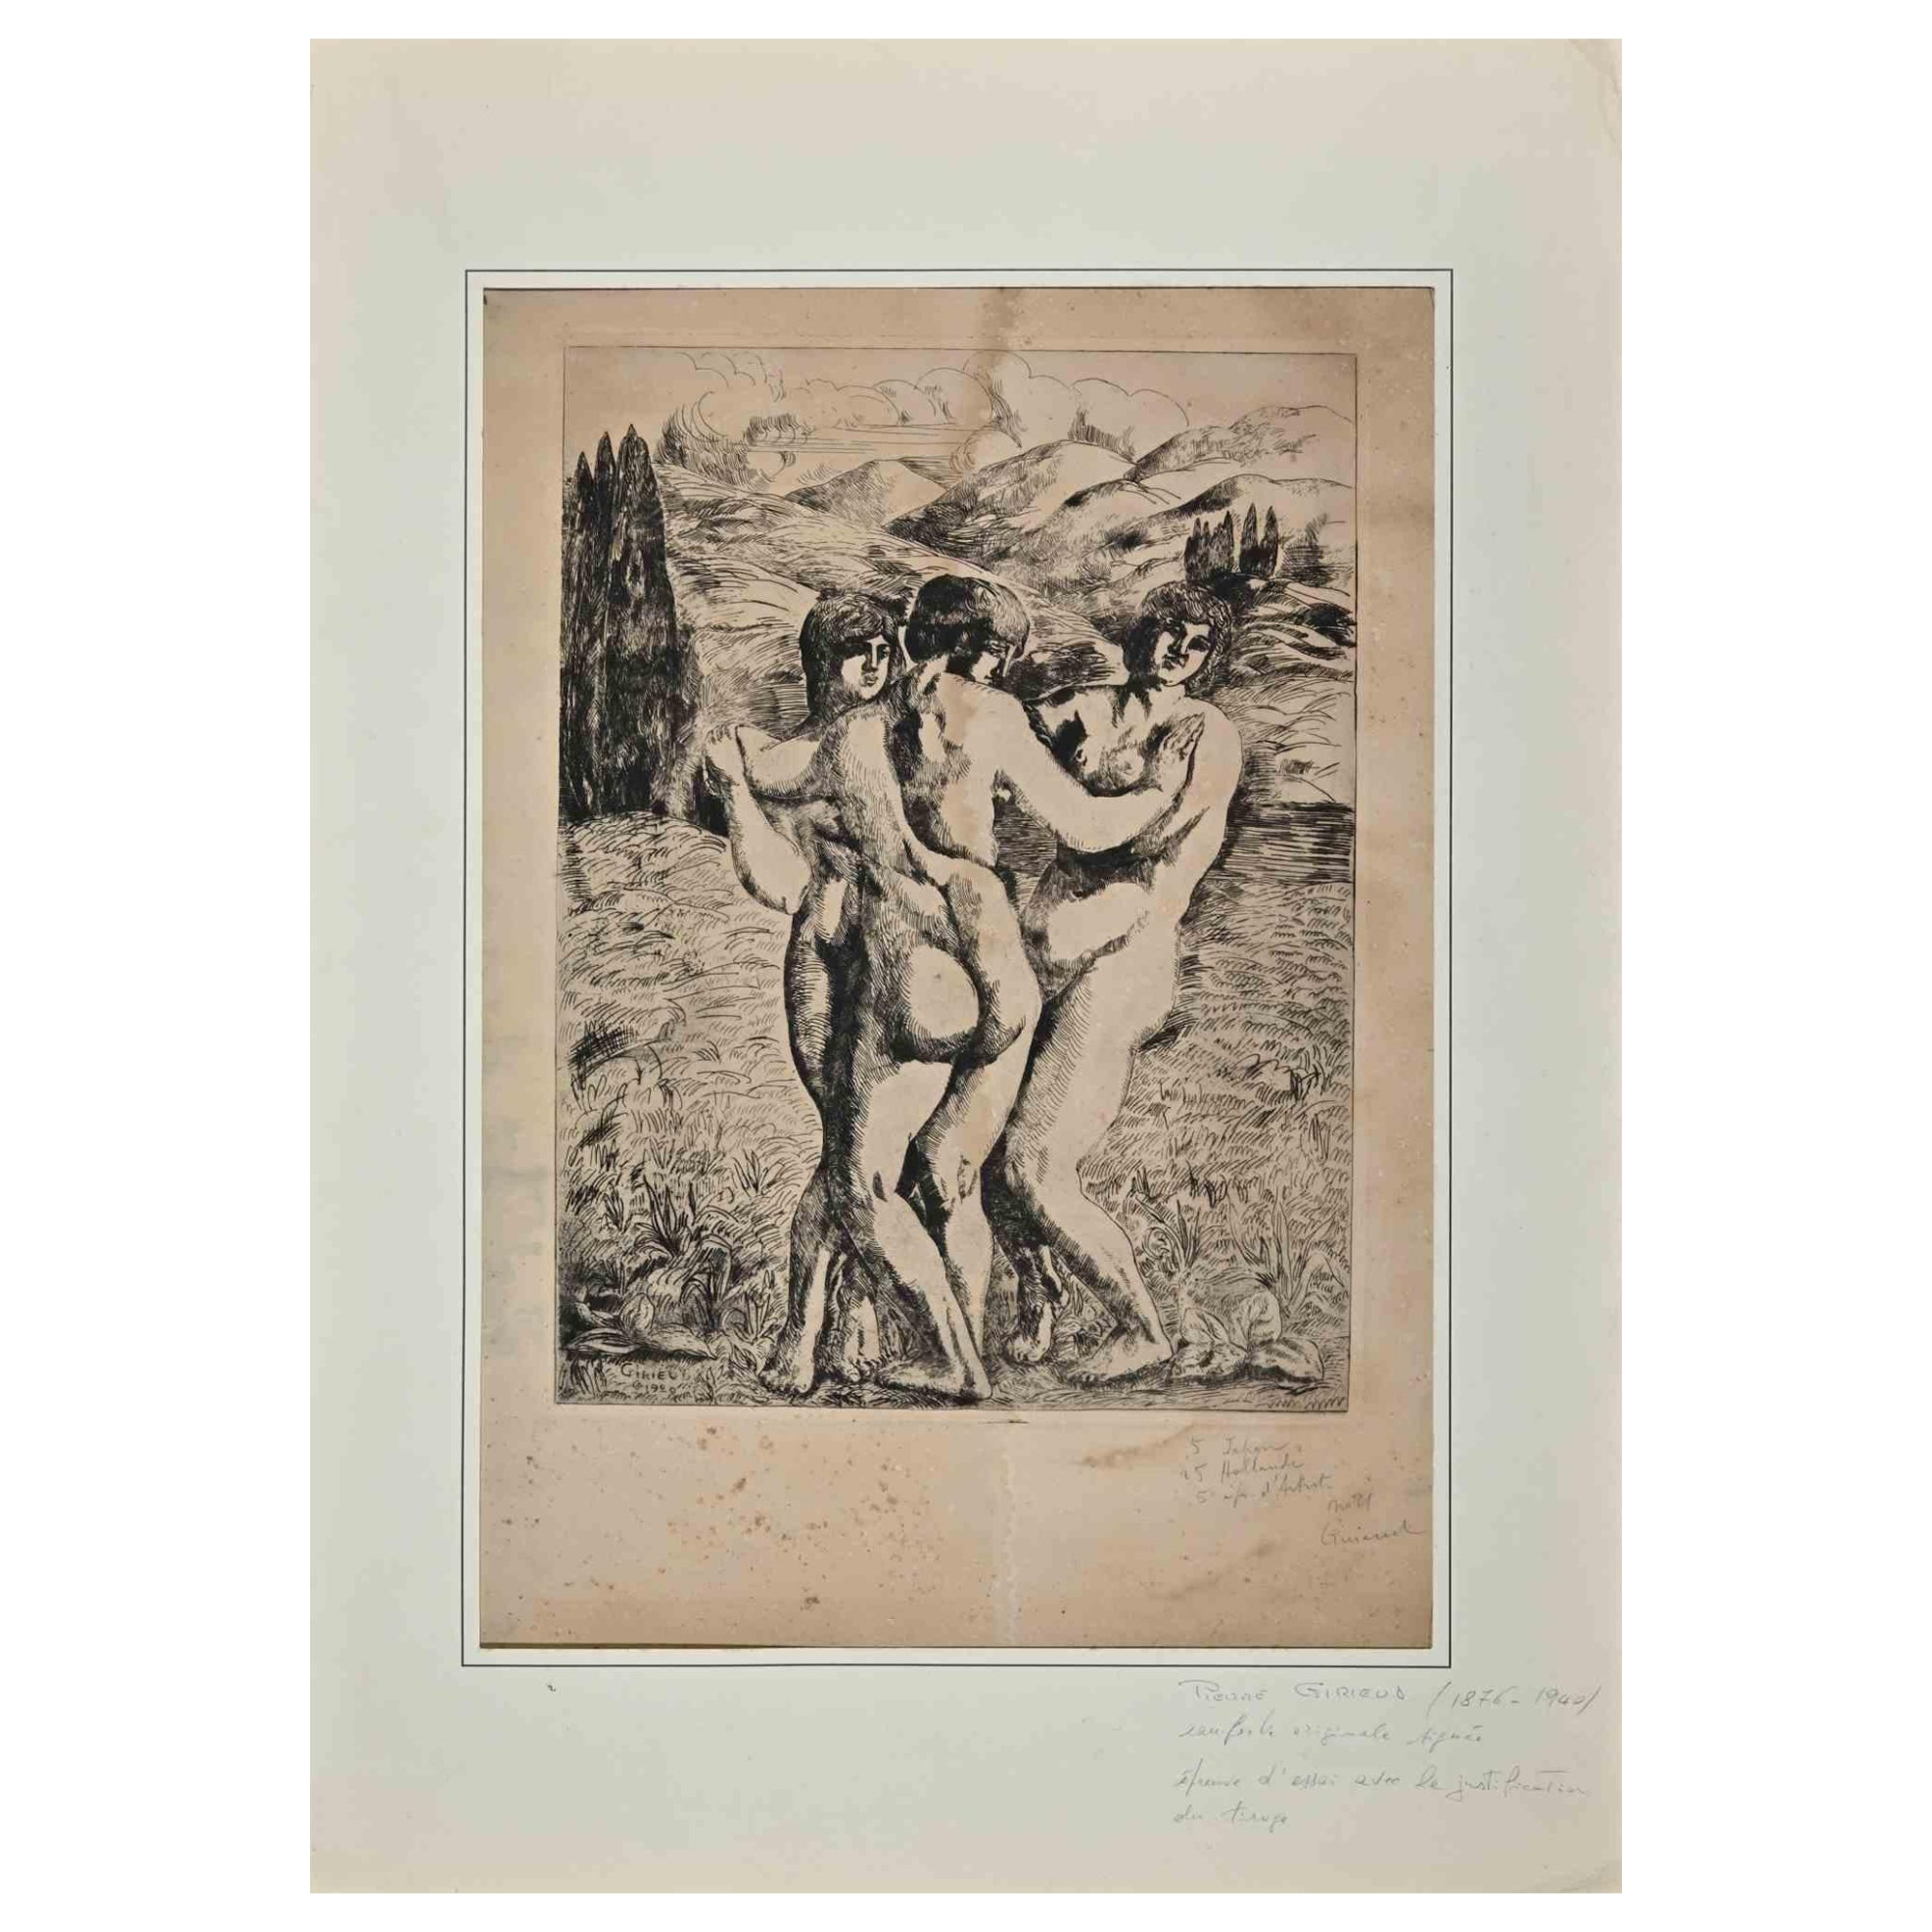 Trois figures est une gravure et une pointe sèche originales réalisées par Pierre Girieud (1876-1940).

Foxing et taches sur le centre supérieur.

Comprend un passe-partout en carton blanc (69x49 cm).

Signé à la main dans le coin inférieur